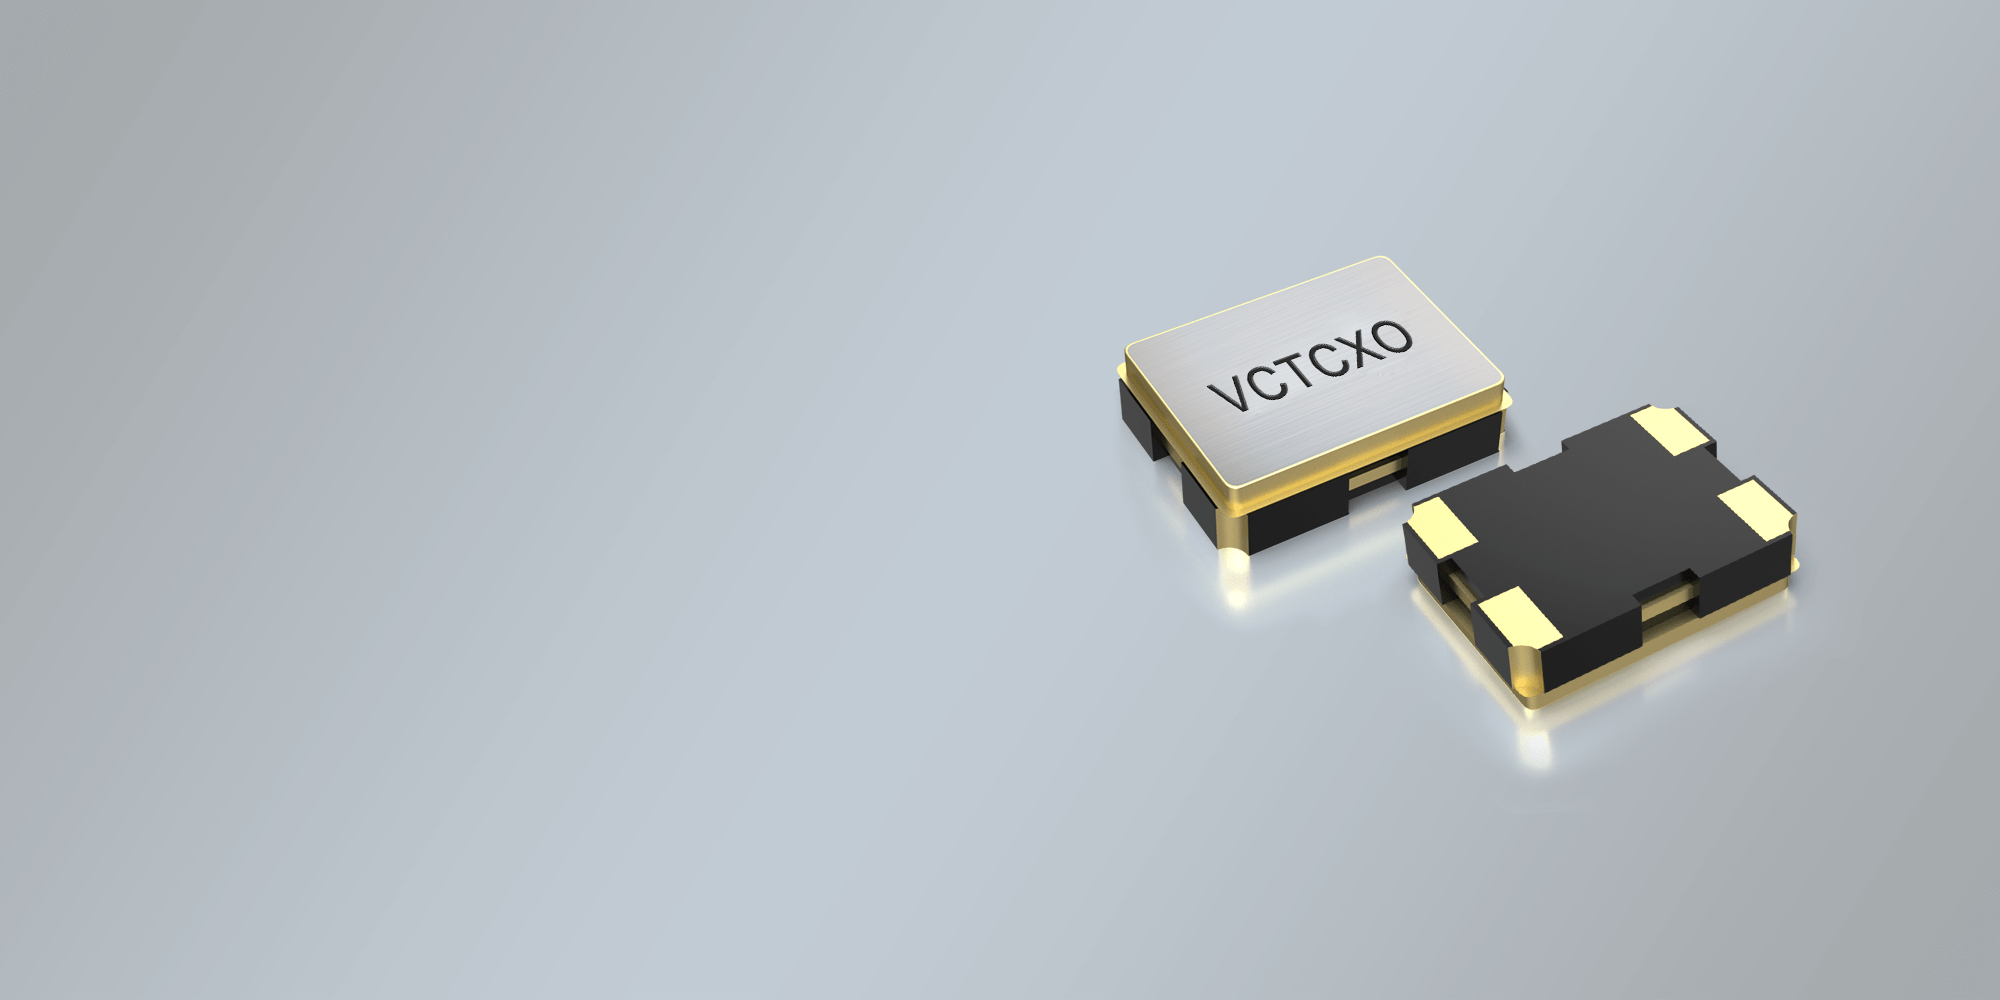 SMD VCTCXO OSZILLATOR 3,2 x 2,5 mm 9.6 - 52.0 MHz